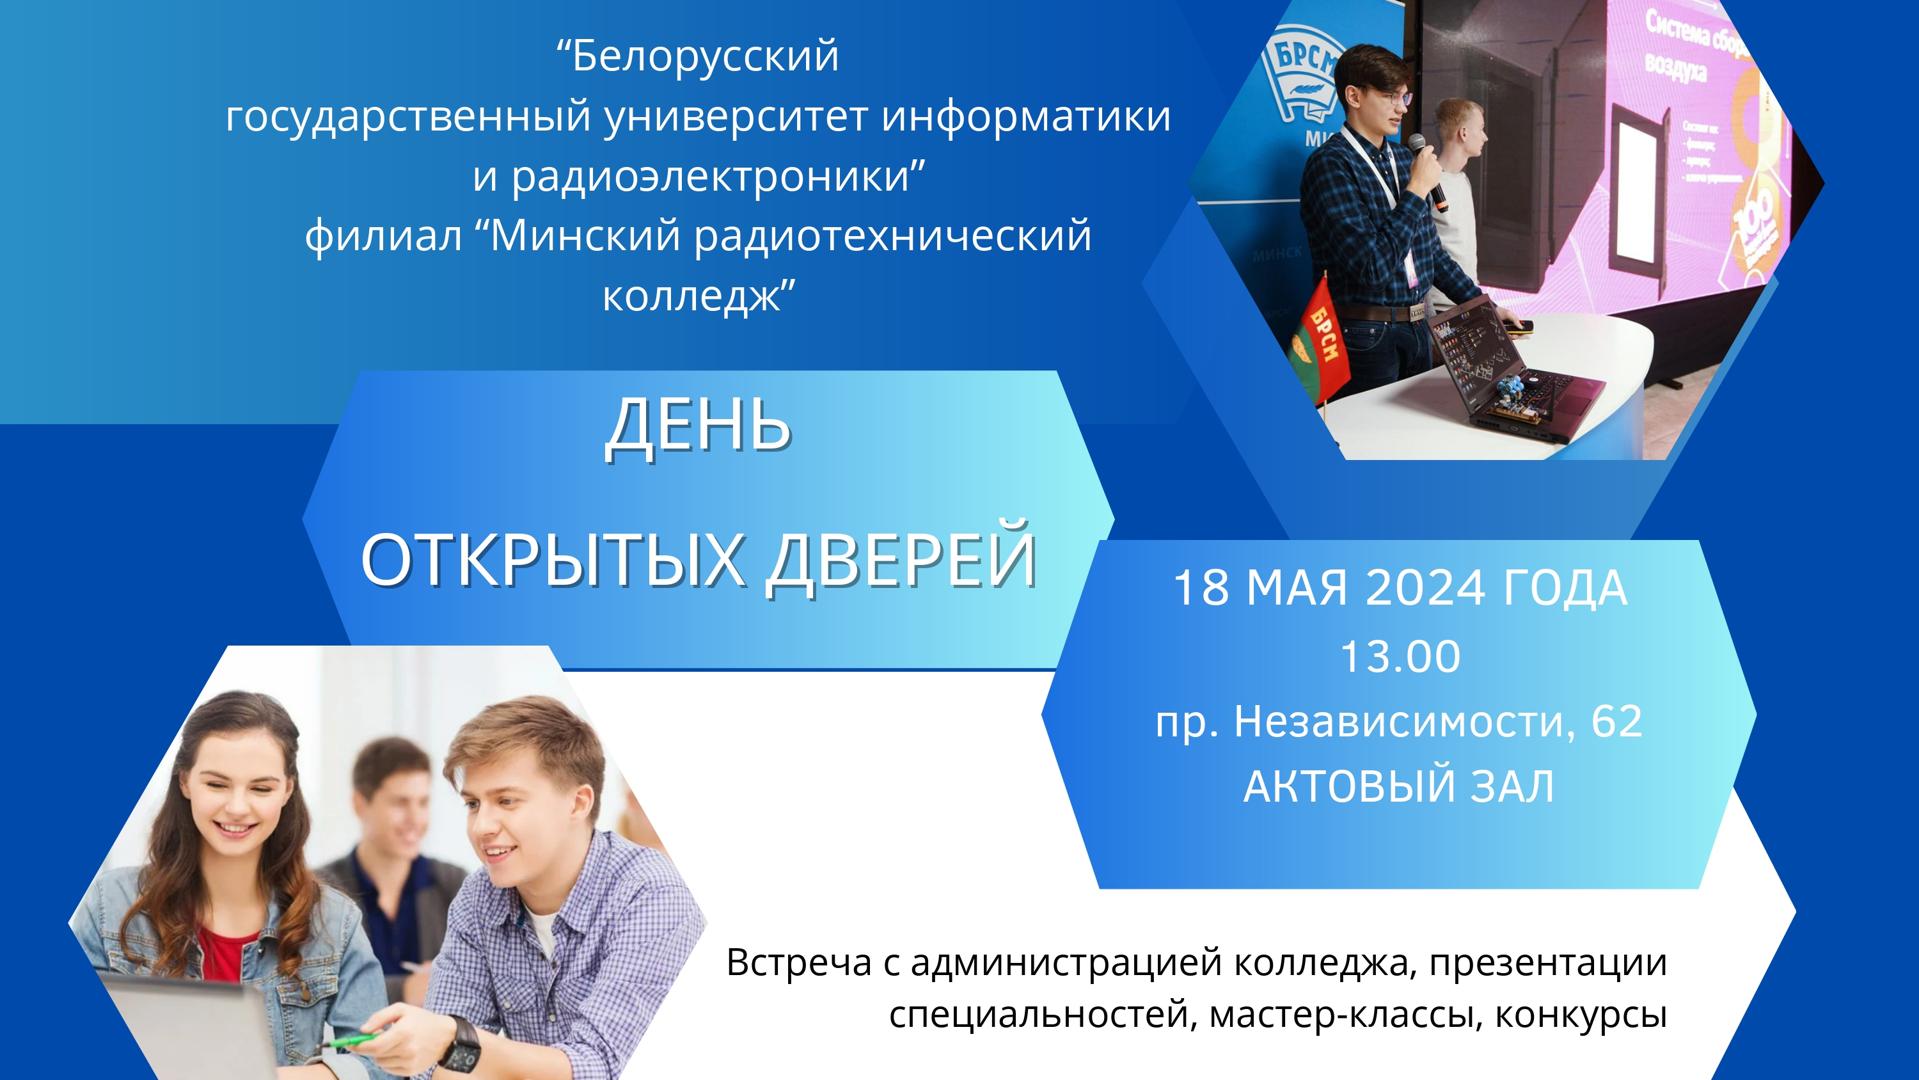 День открытых дверей в БГУИР филиале «Минский радиотехнический колледж» 18 мая 2024 года